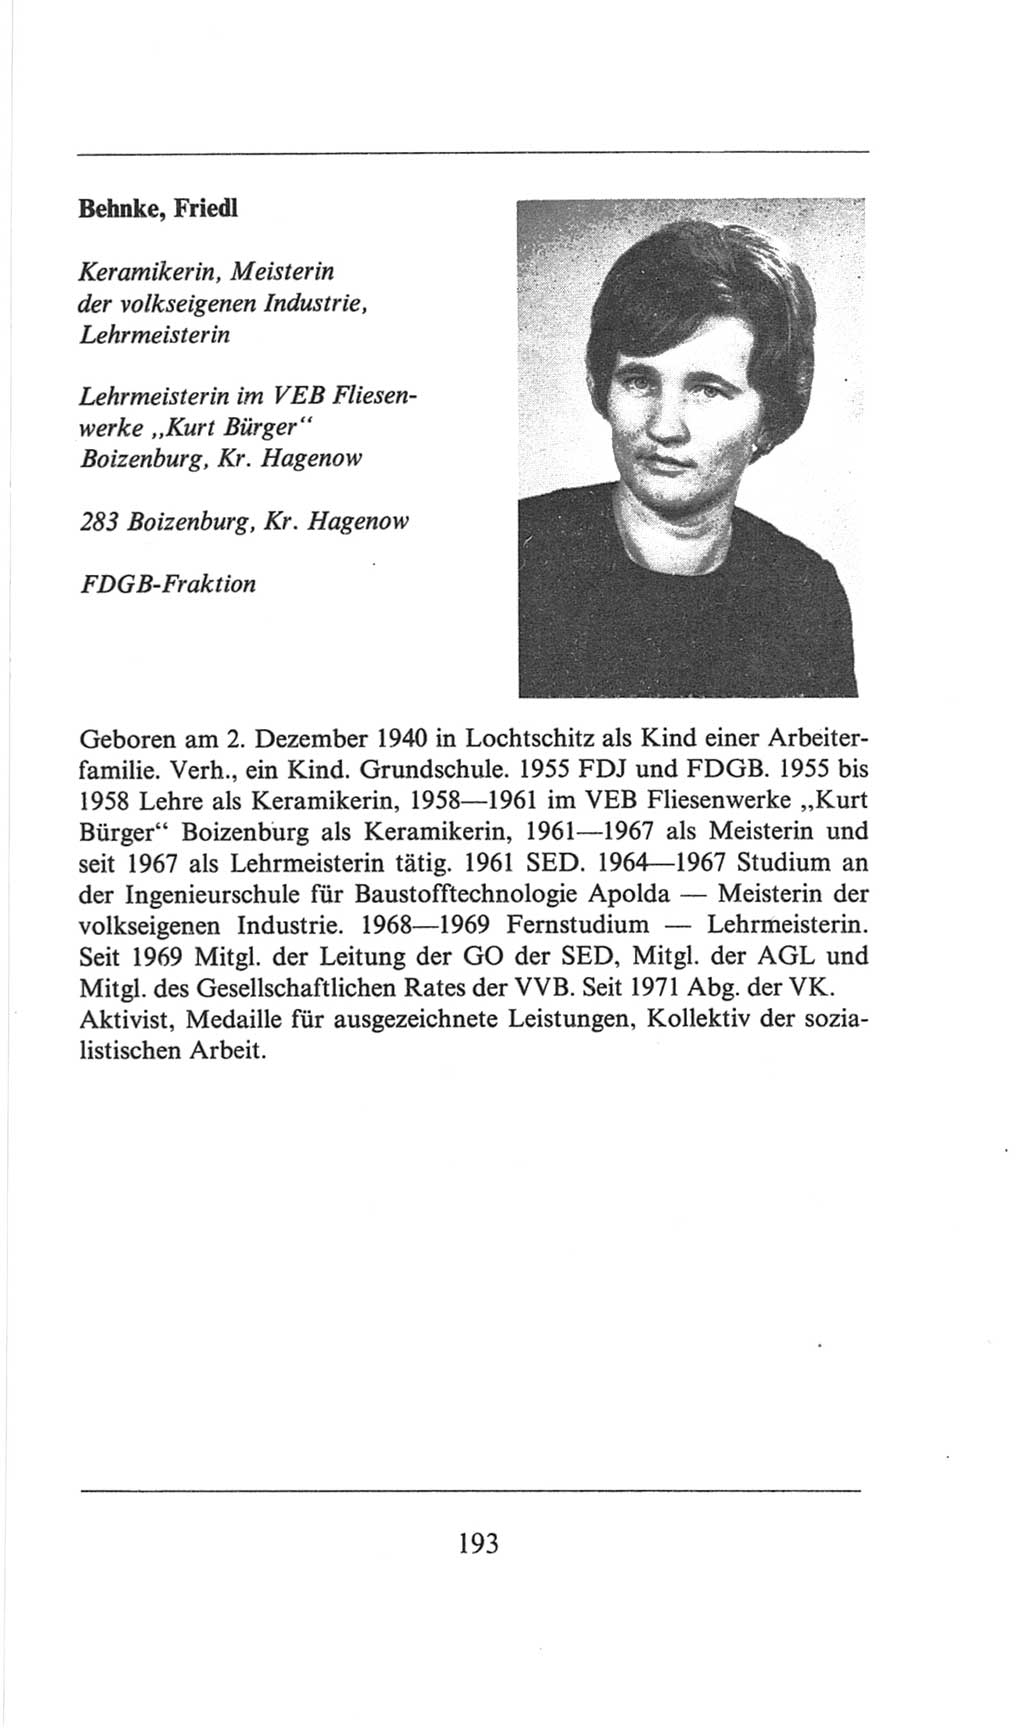 Volkskammer (VK) der Deutschen Demokratischen Republik (DDR), 6. Wahlperiode 1971-1976, Seite 193 (VK. DDR 6. WP. 1971-1976, S. 193)